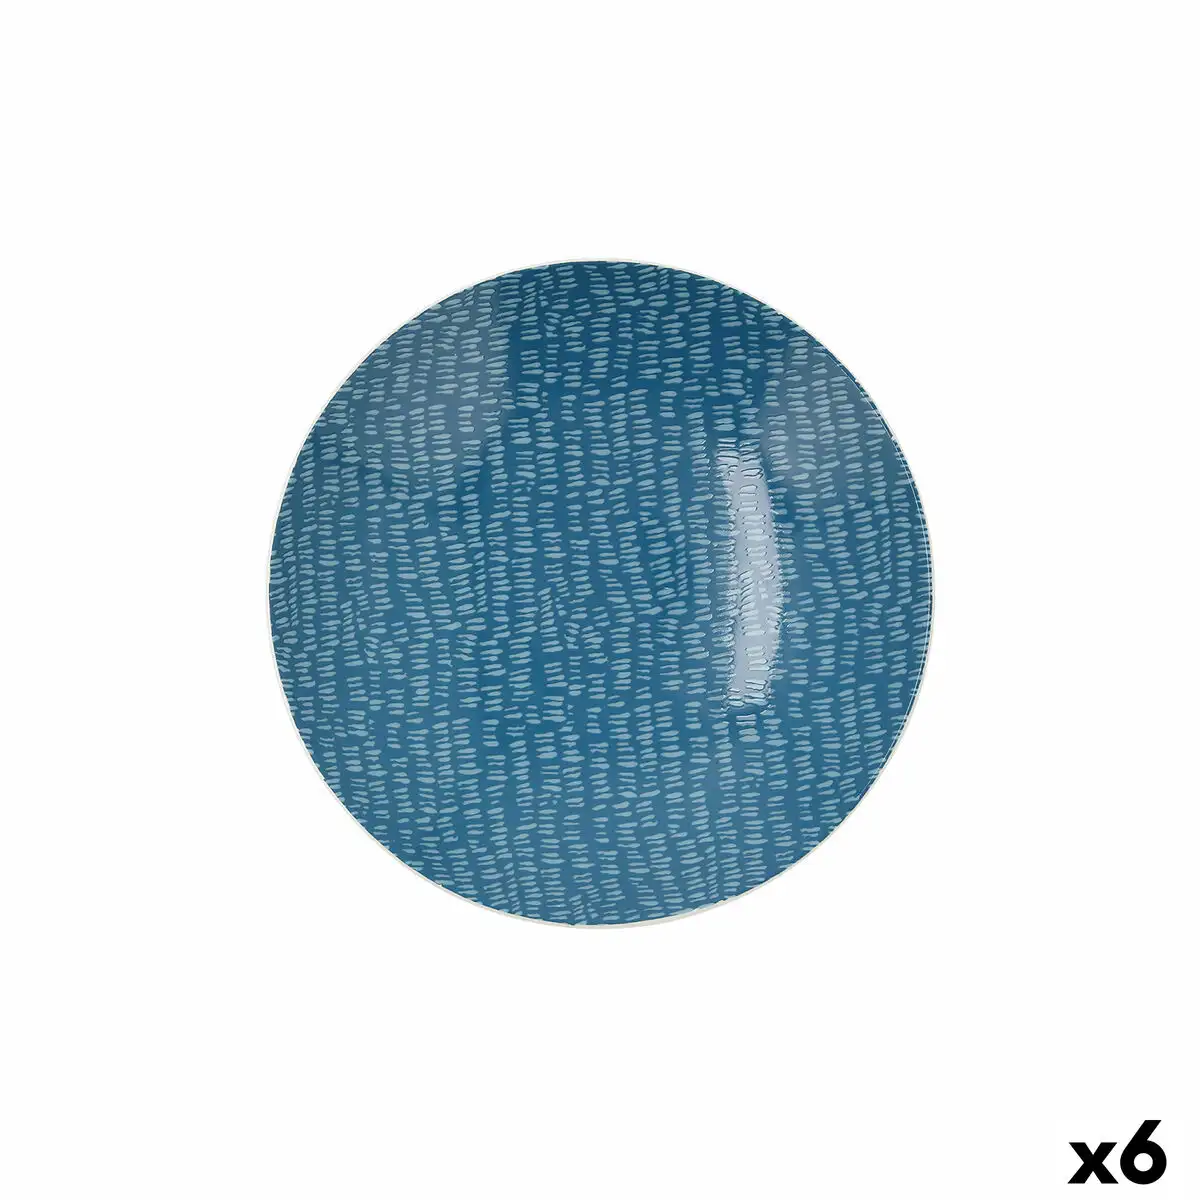 Assiette creuse ariane coupe ripple ceramique bleu 20 cm 6 unites _3309. DIAYTAR SENEGAL - Votre Plateforme Shopping de Confiance. Naviguez à travers nos rayons et choisissez des produits fiables qui répondent à vos besoins quotidiens.